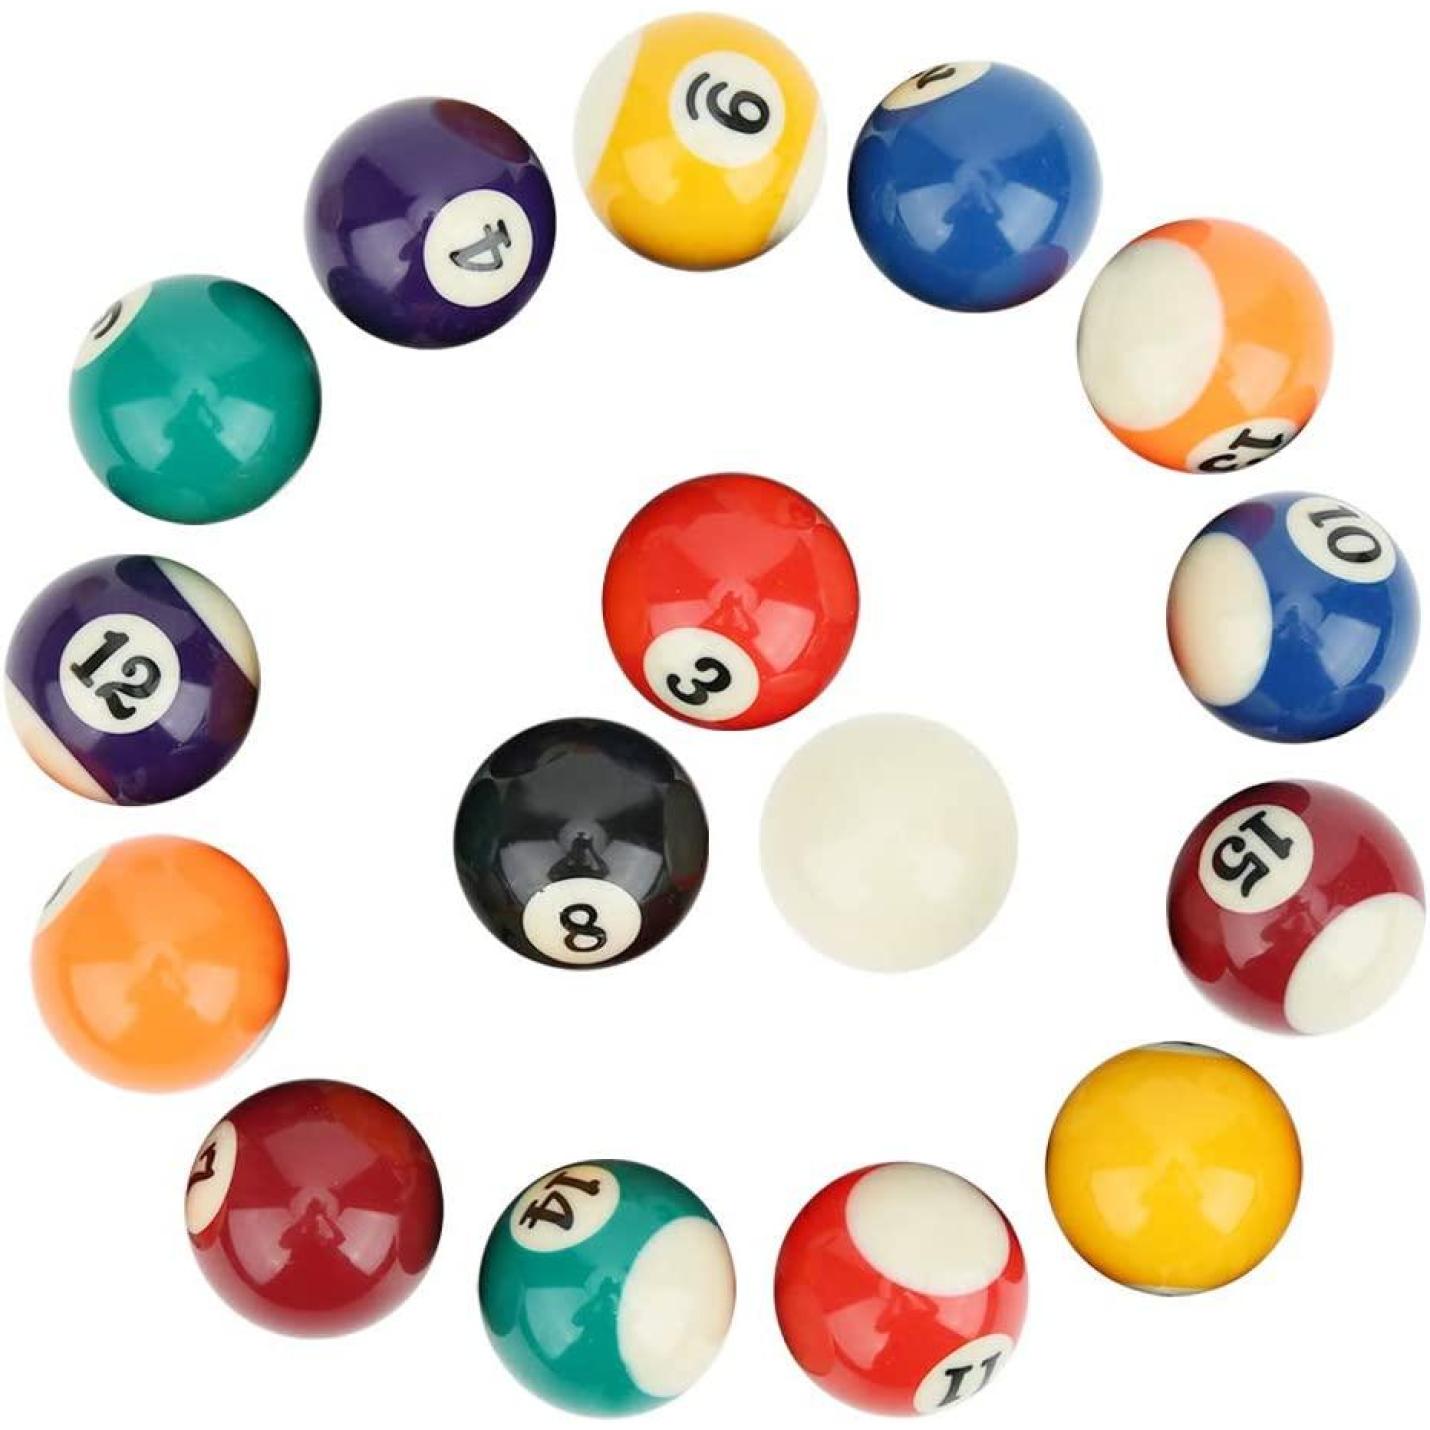 Klein formaat biljartballen - set van 16 stuks - eco-vriendelijk en geschikt voor kinderen